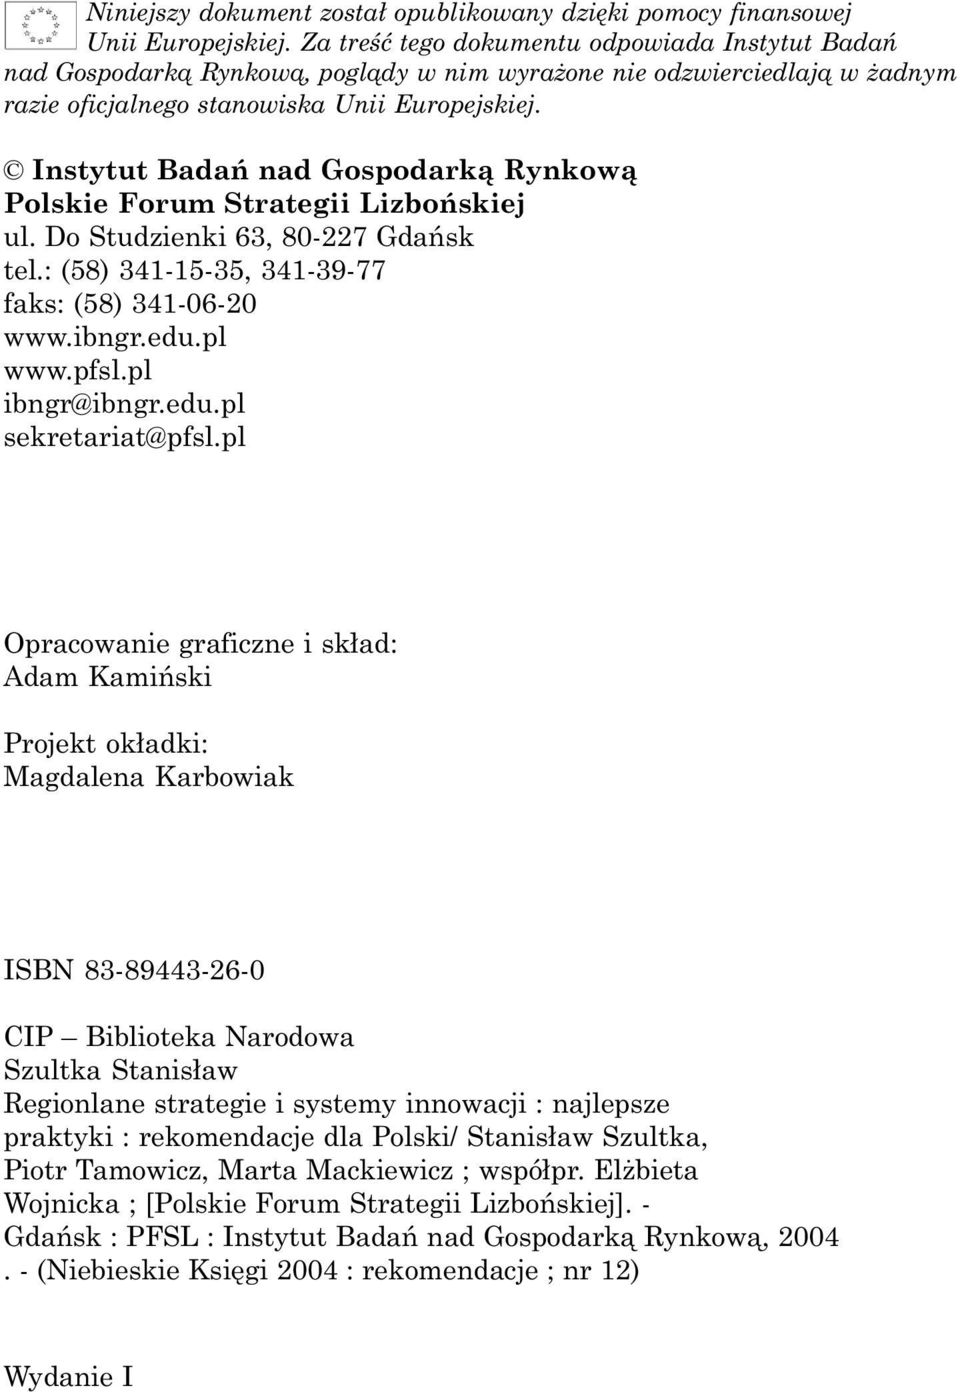 Instytut Badañ nad Gospodark¹ Rynkow¹ Polskie Forum Strategii Lizboñskiej ul. Do Studzienki 63, 80-227 Gdañsk tel.: (58) 341-15-35, 341-39-77 faks: (58) 341-06-20 www.ibngr.edu.pl www.pfsl.